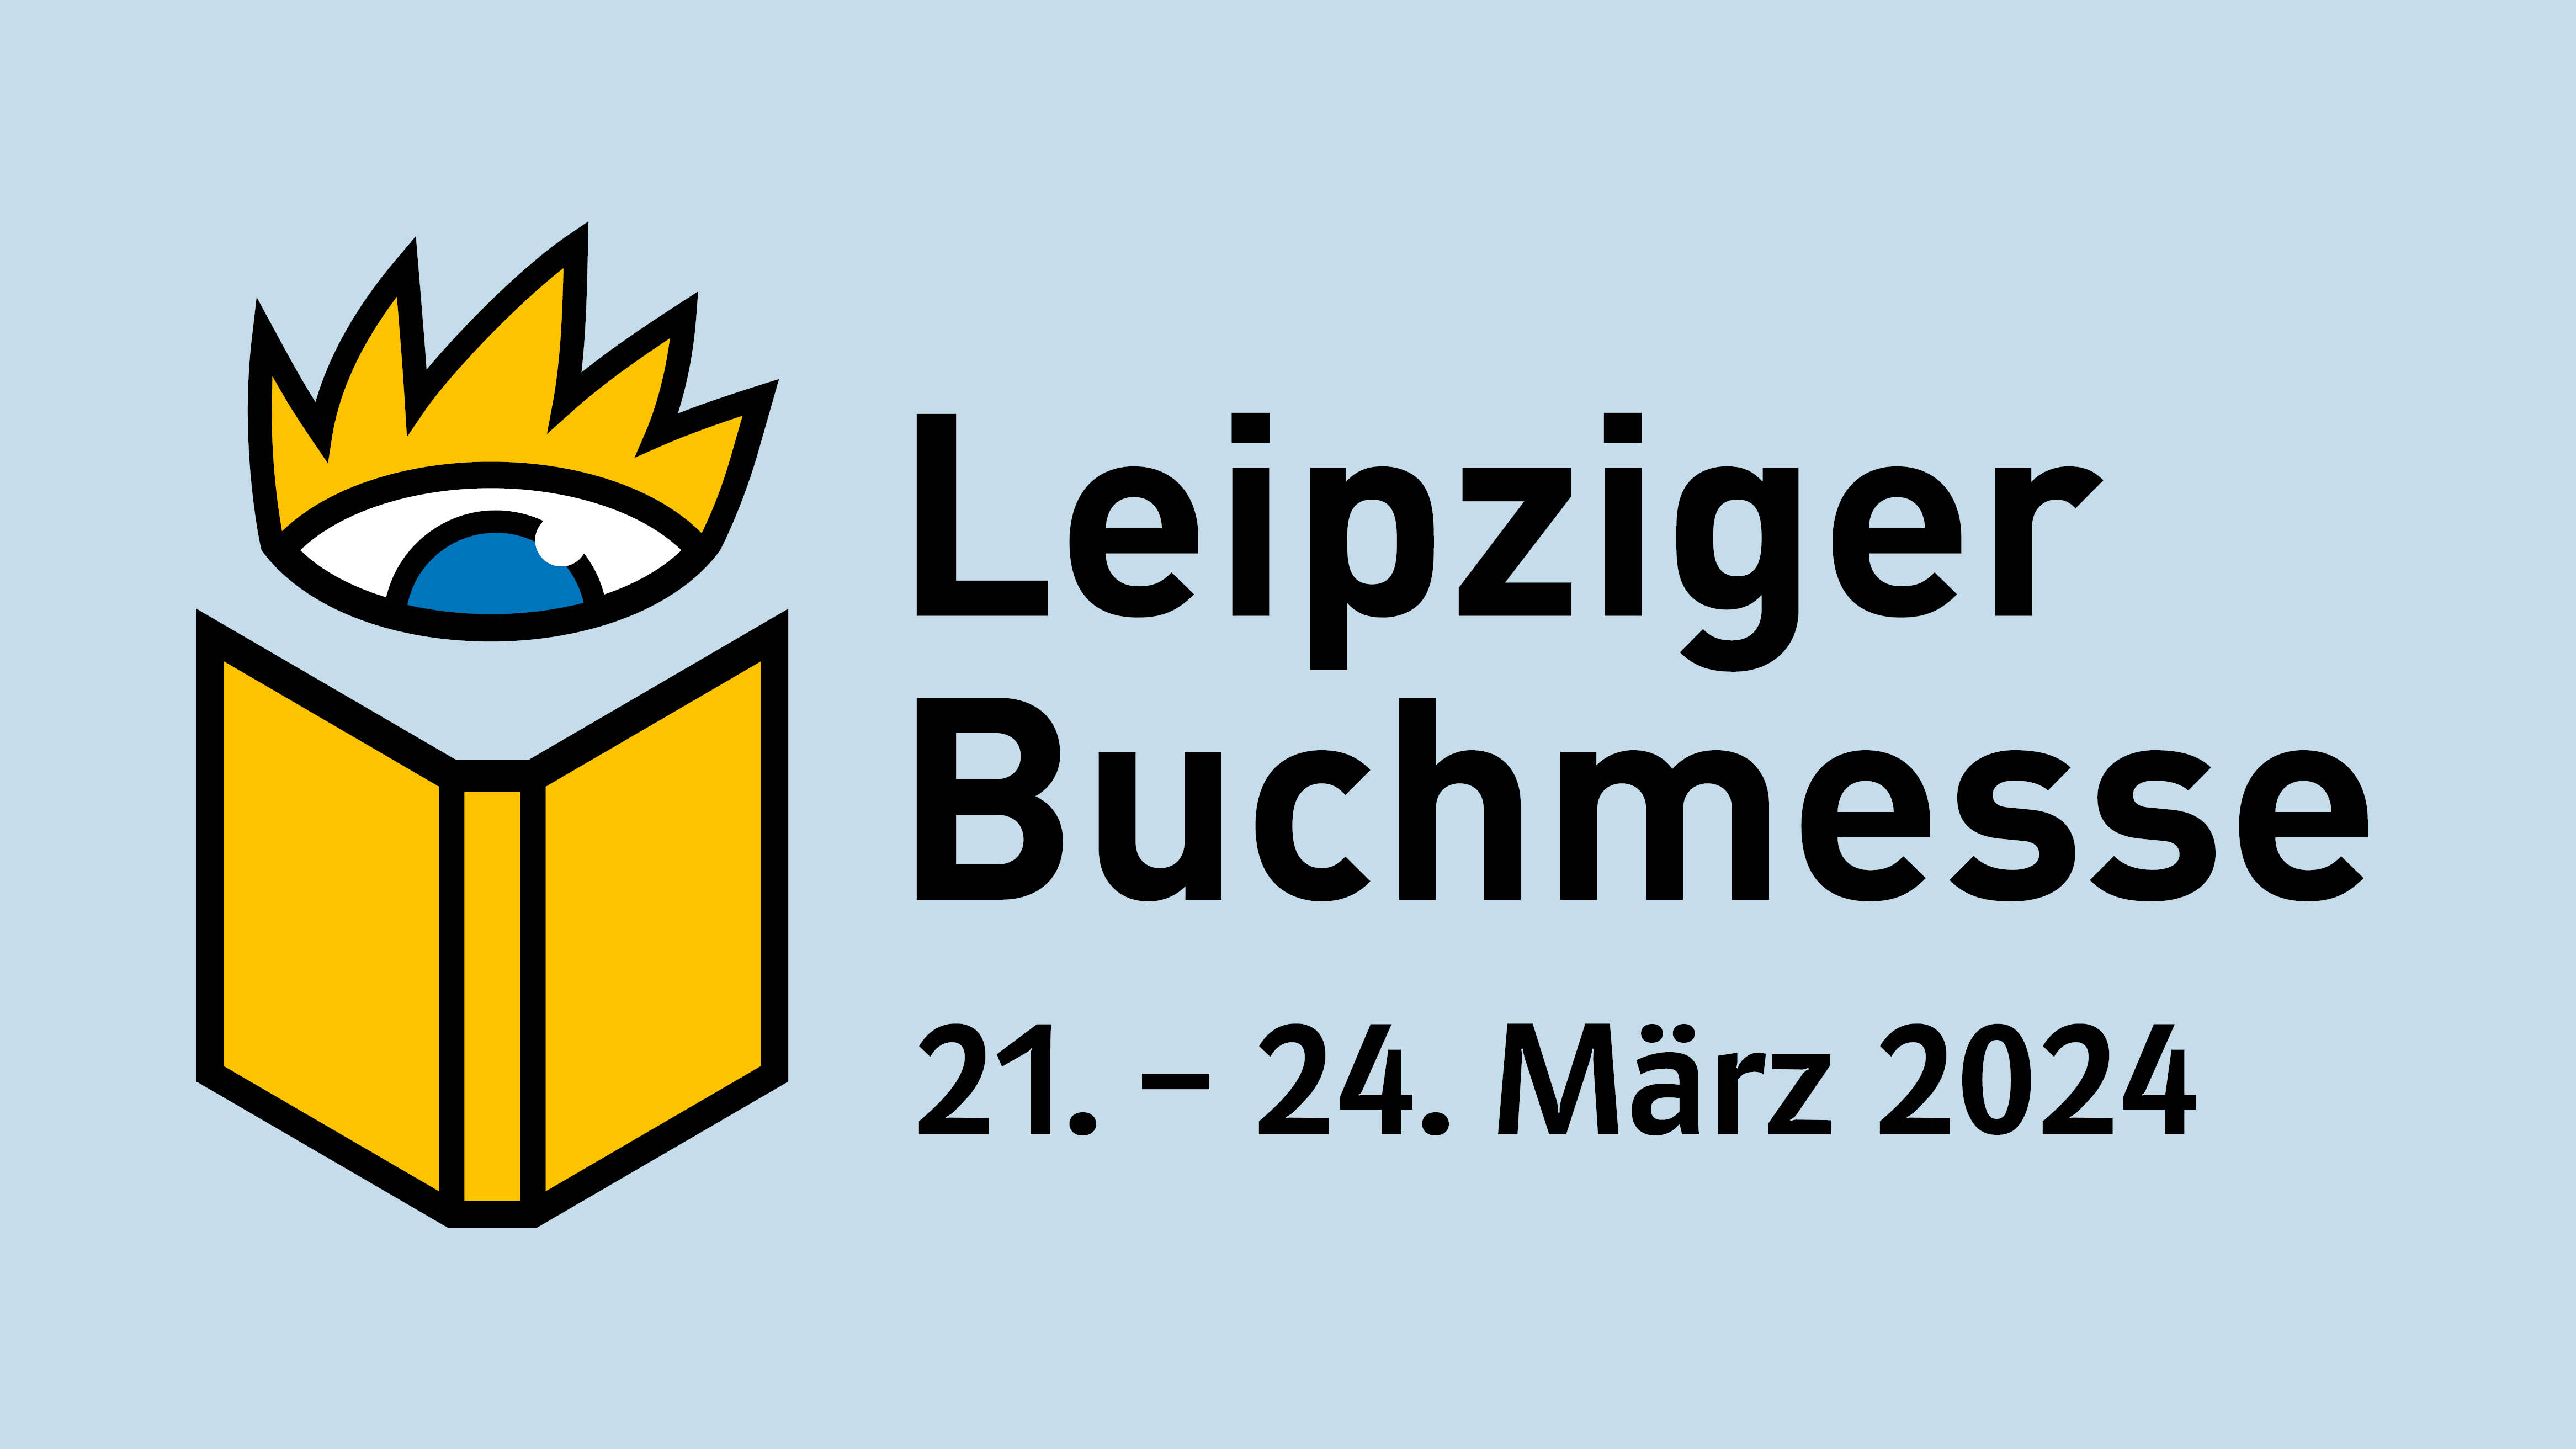 Besuchen Sie uns auf der Leipziger Buchmesse